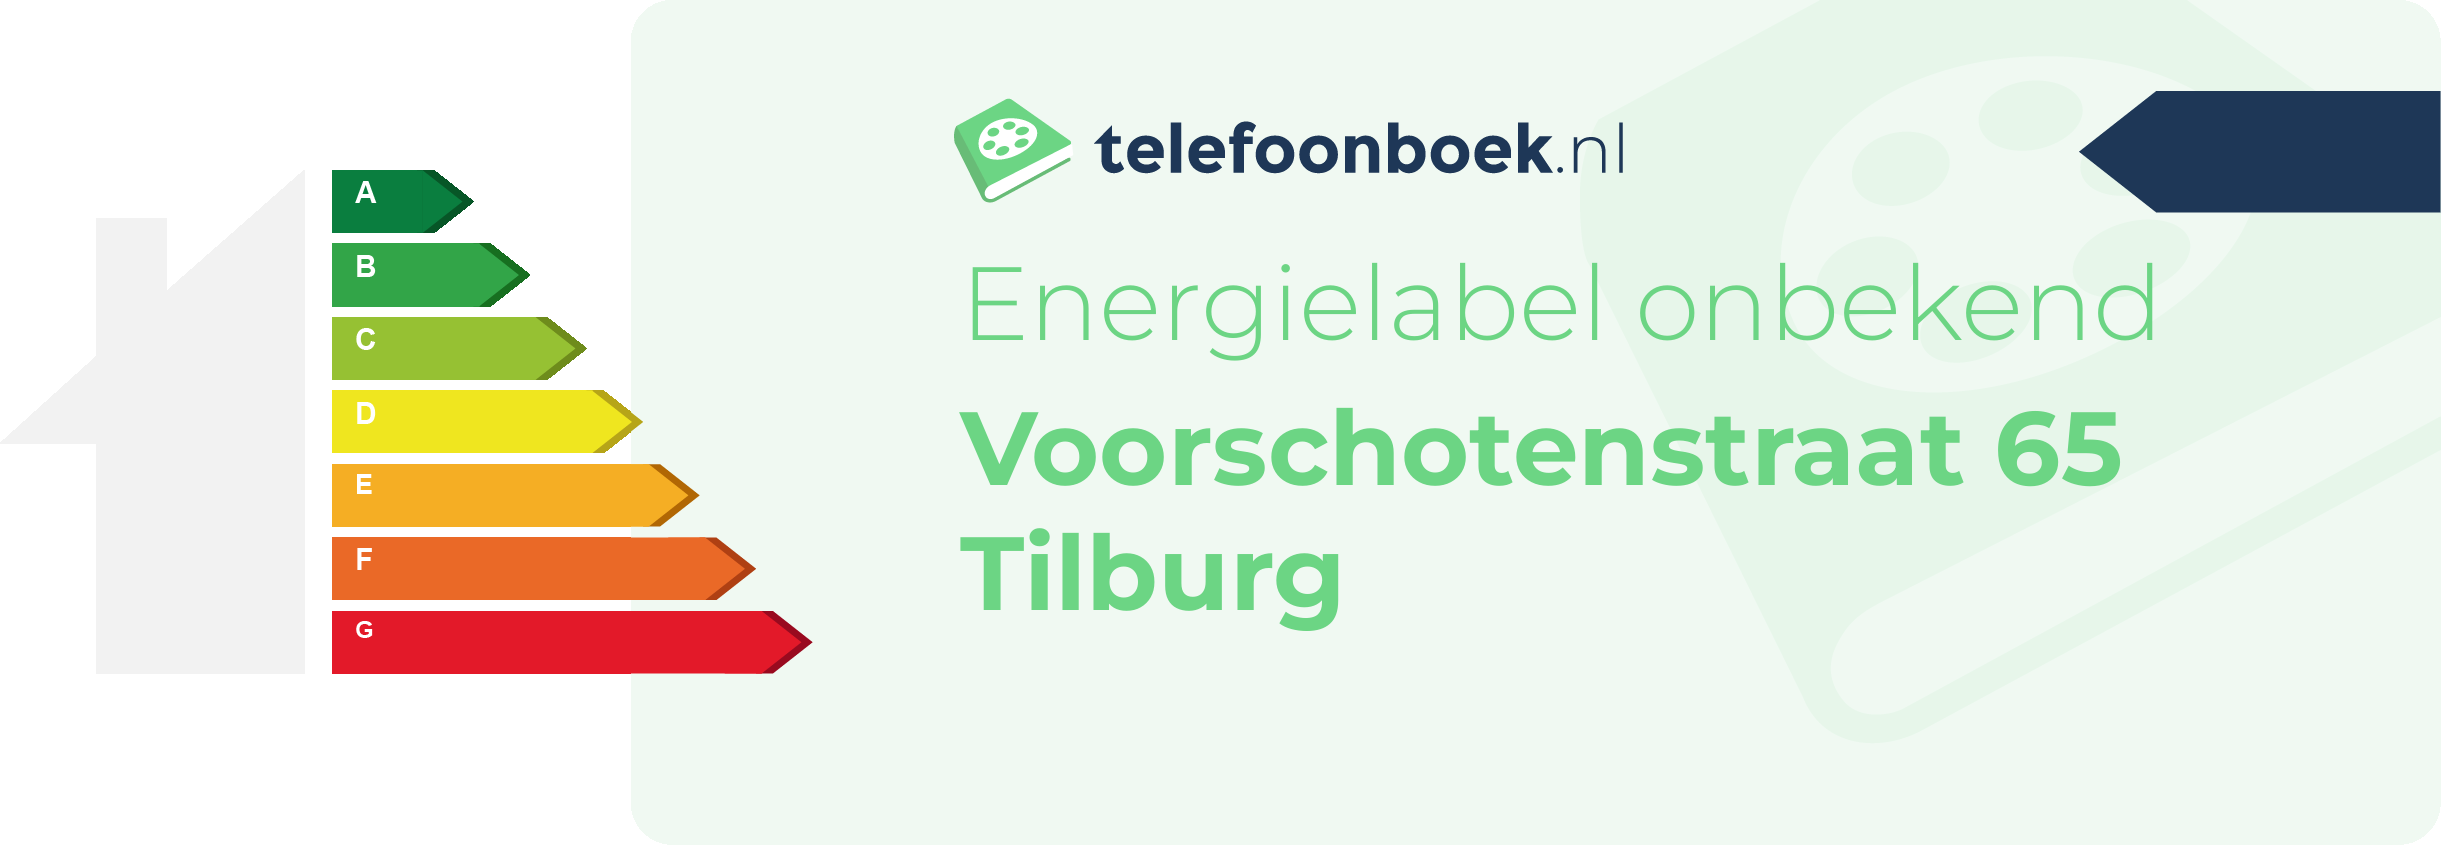 Energielabel Voorschotenstraat 65 Tilburg